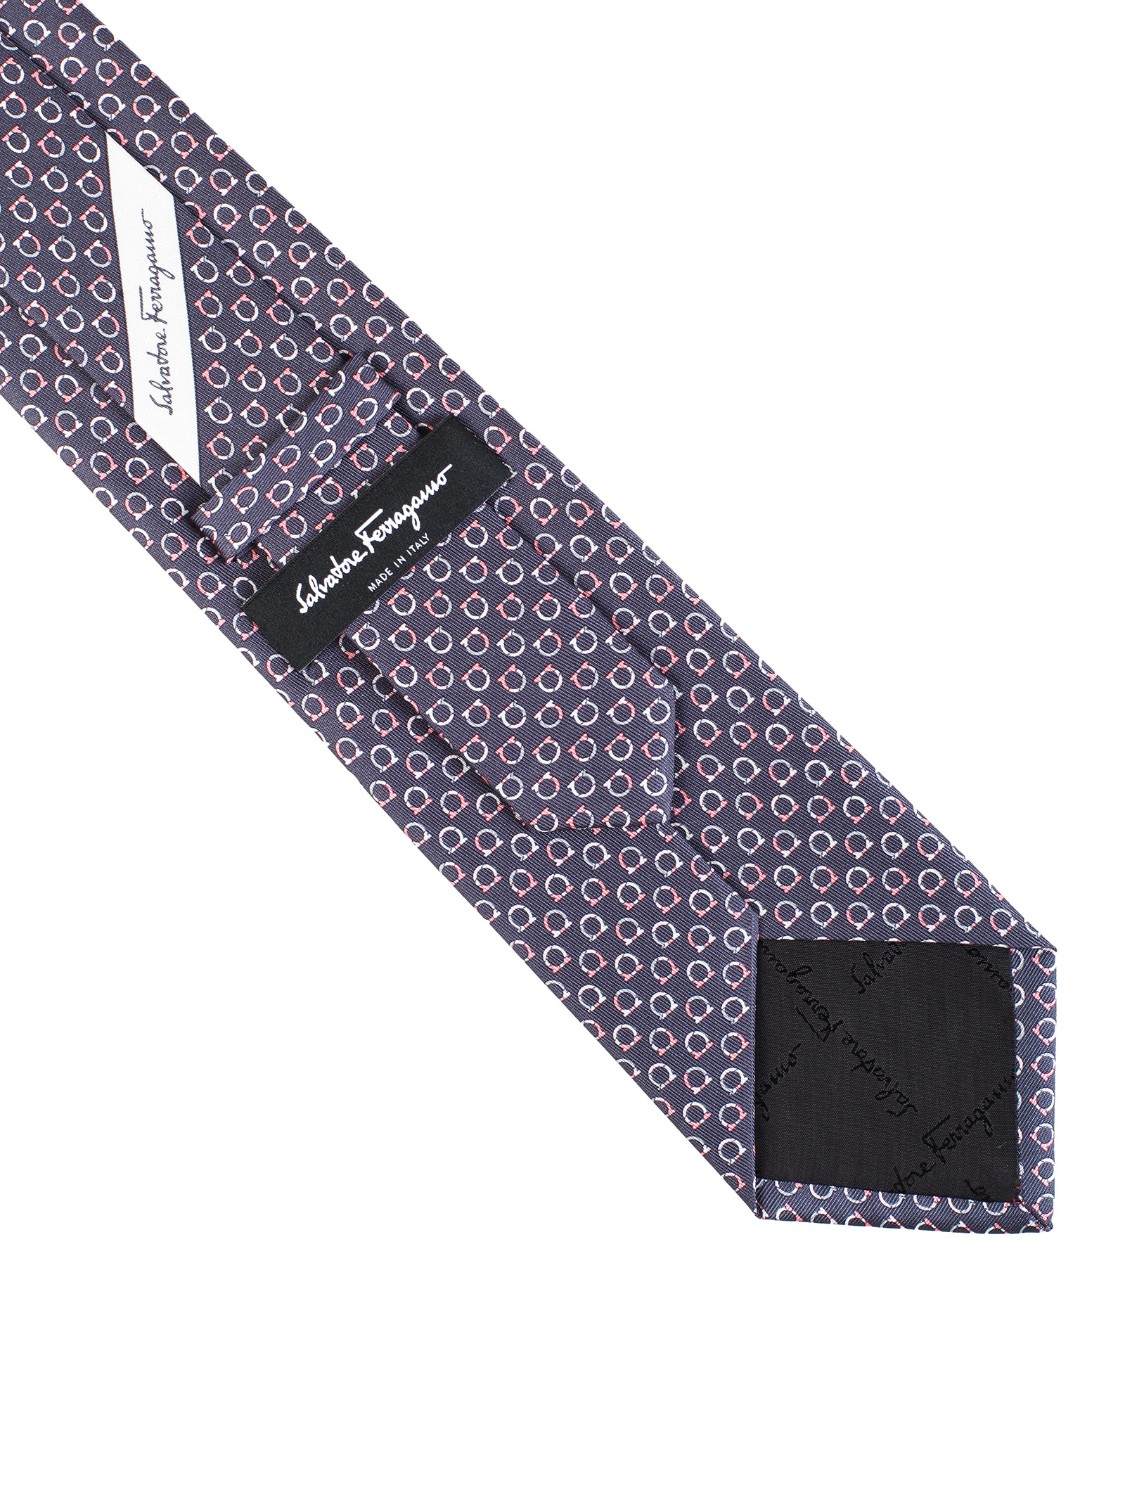 shop SALVATORE FERRAGAMO  Cravatta: Salvatore Ferragamo cravatta in seta con stampa Gancini.
Composizione: 100% seta.
Made in Italy.. 357925 GOOD-003 705647 number 784575